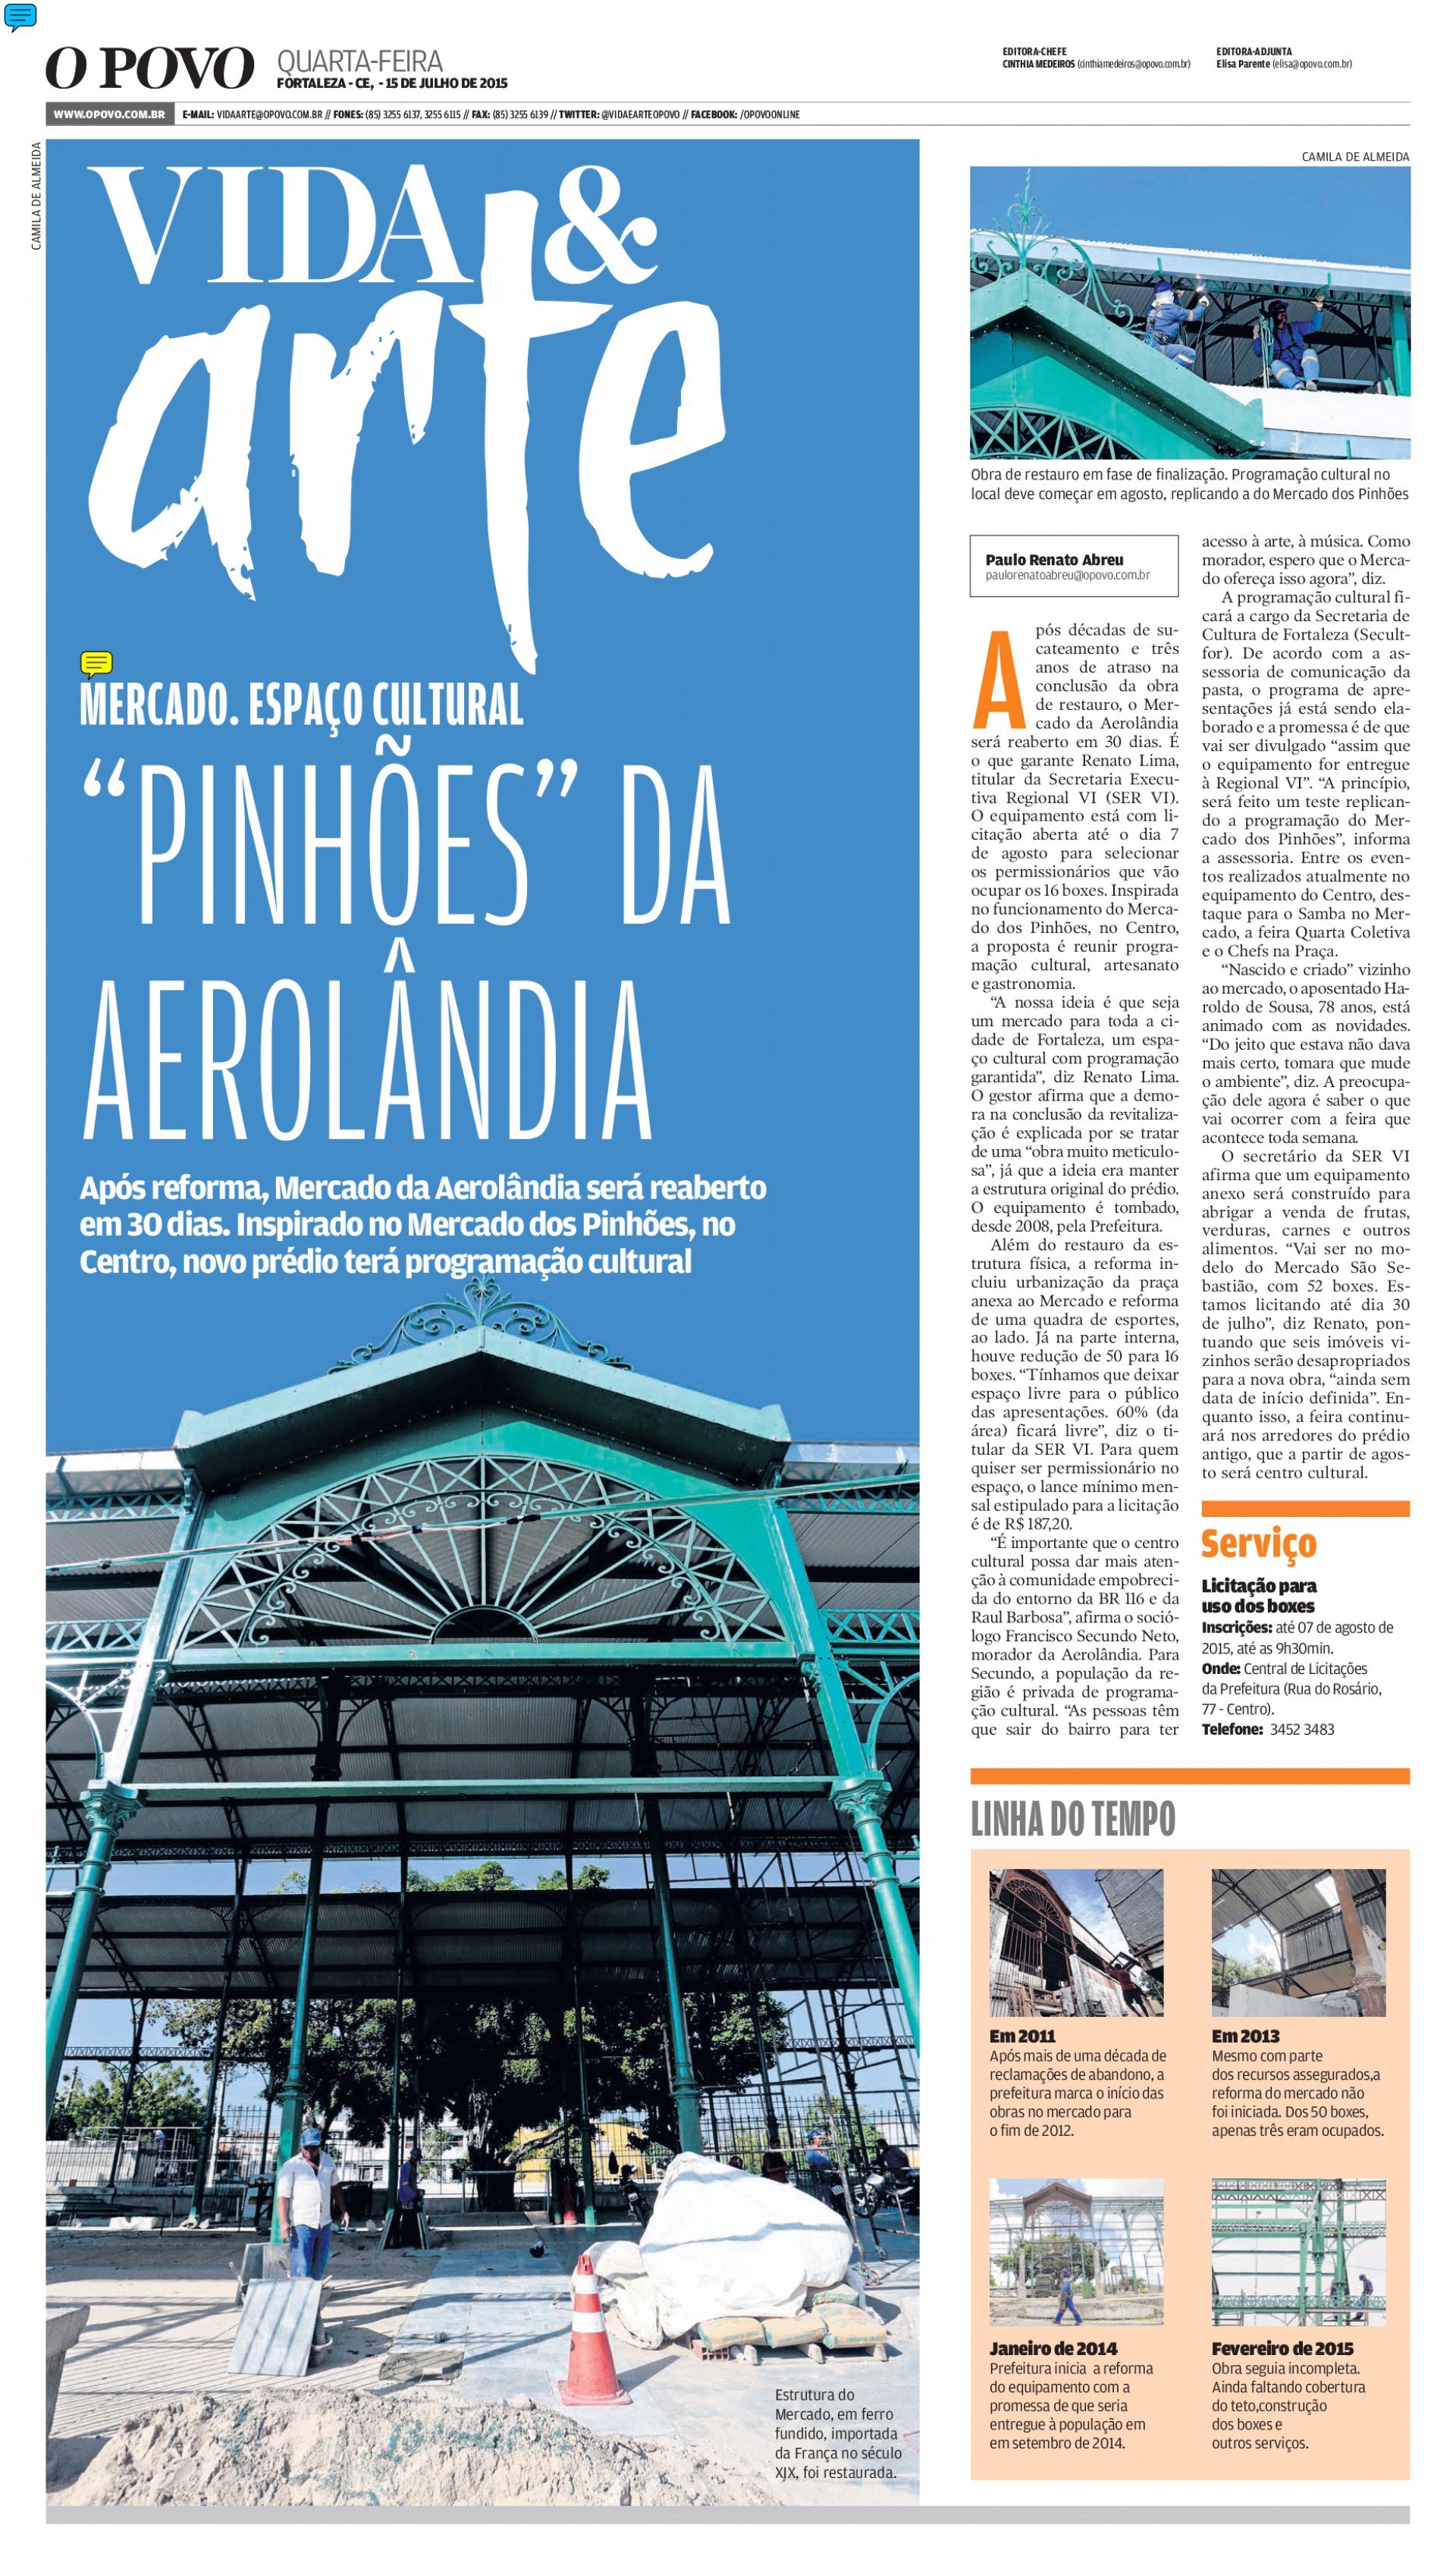 Edição de 15 de julho de 2015 do caderno Vida &Arte mostrou processo de restauração do Mercado da Aerolândia. Obra começou em 2012 e só foi entregue no final de 2015.